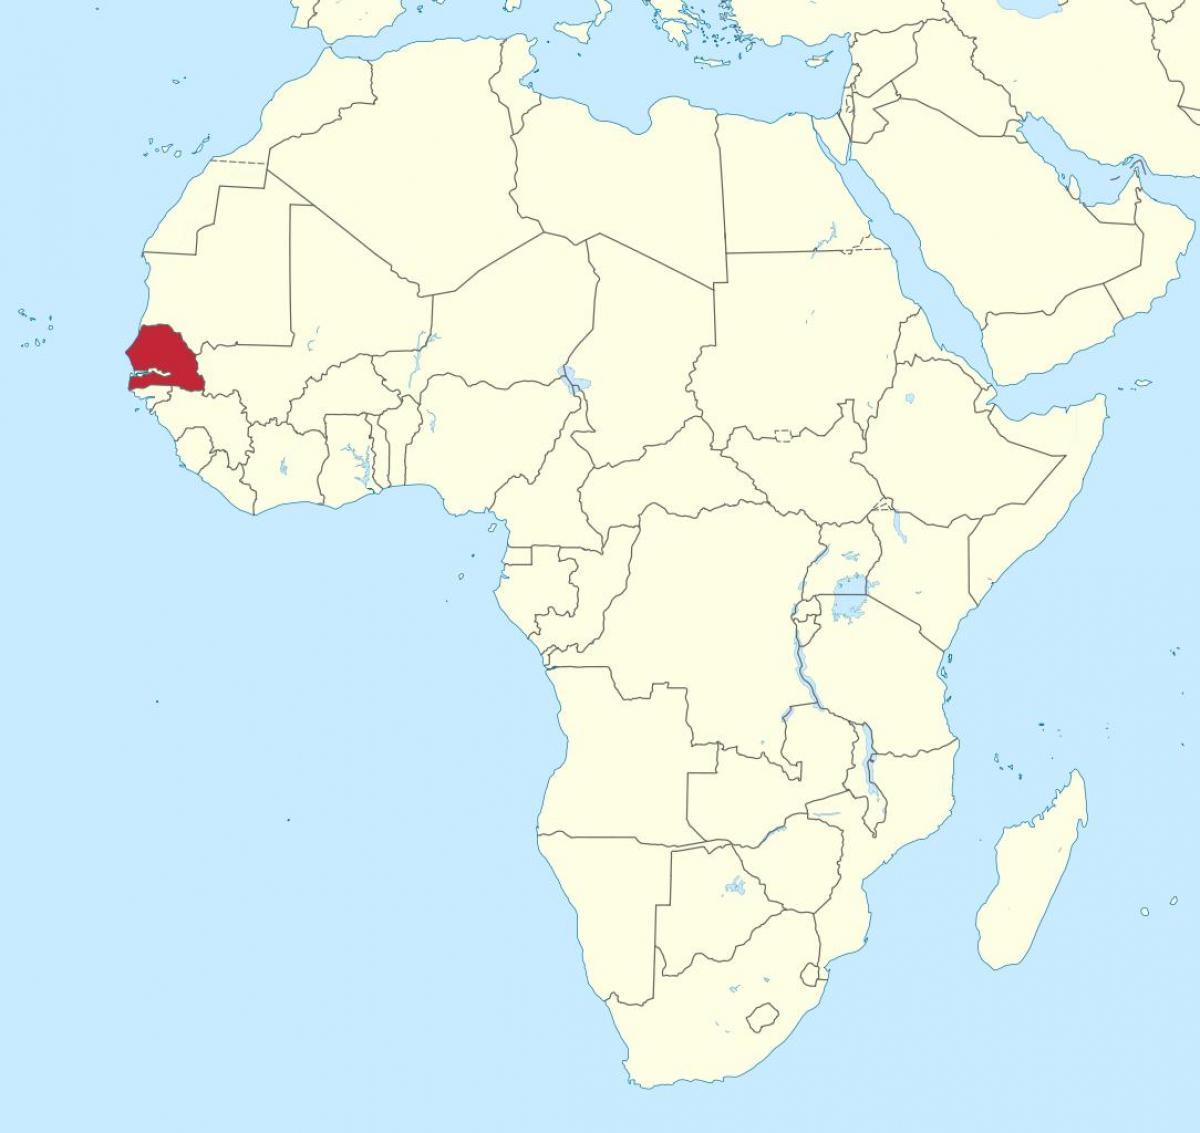 Senegal en el mapa d'àfrica